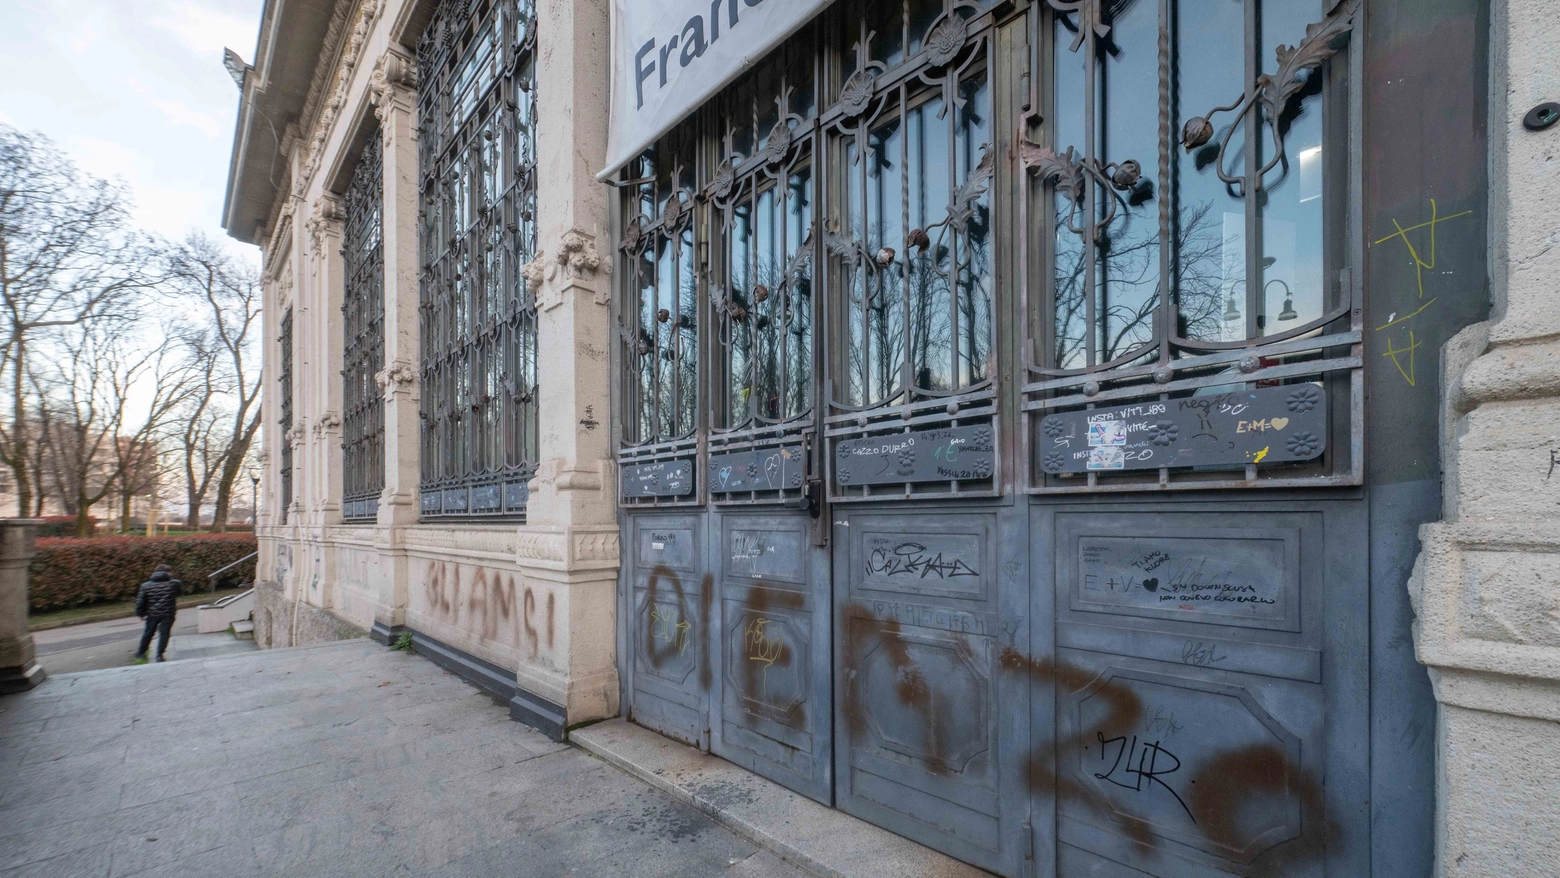 Uno dei graffiti che deturpano la facciata della Palazzina Liberty (Foto Andrea Fasani)